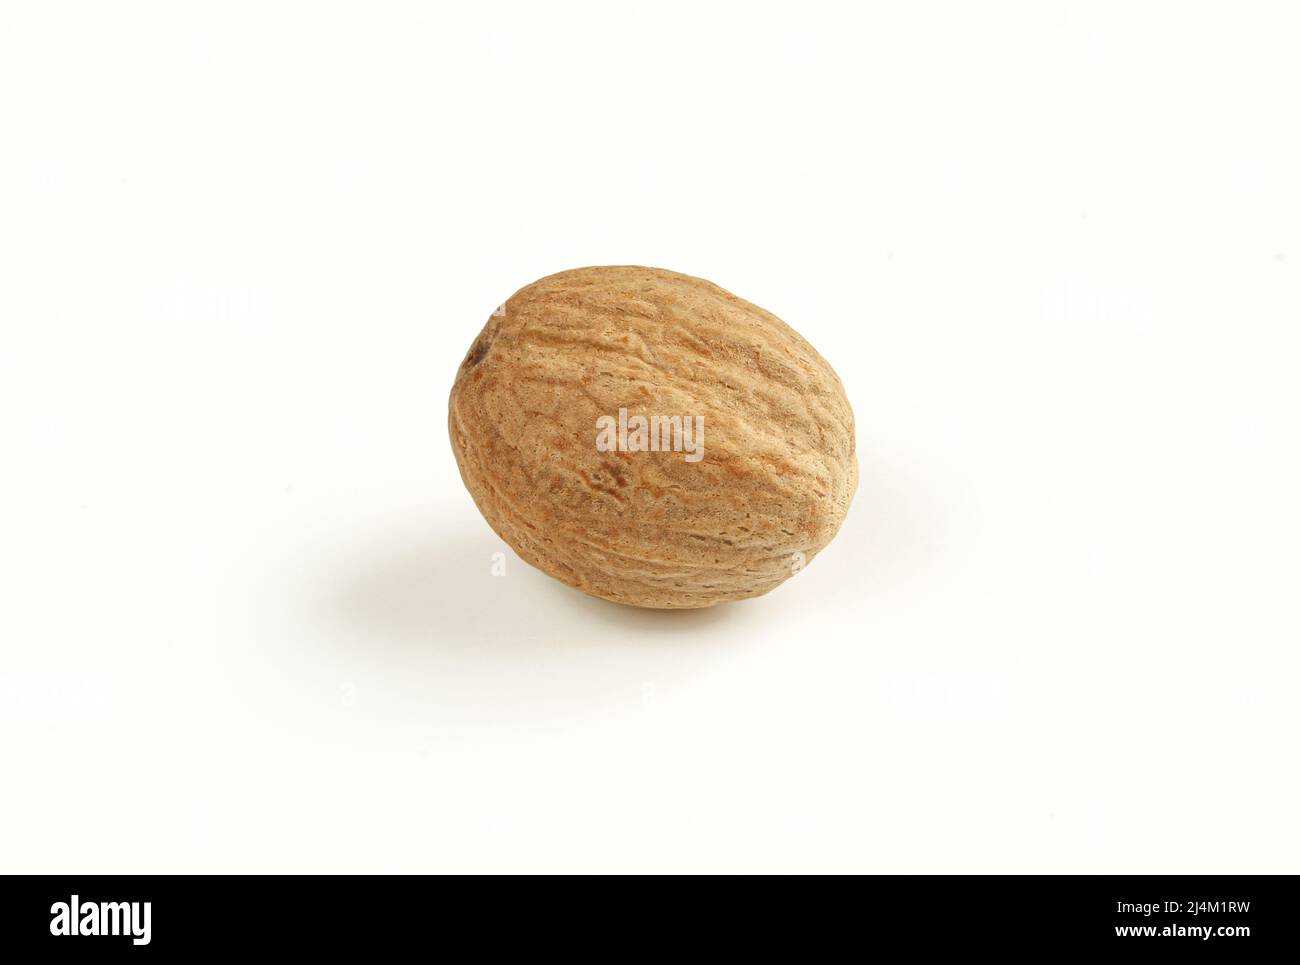 Single nutmeg kernel isolated on white background Stock Photo